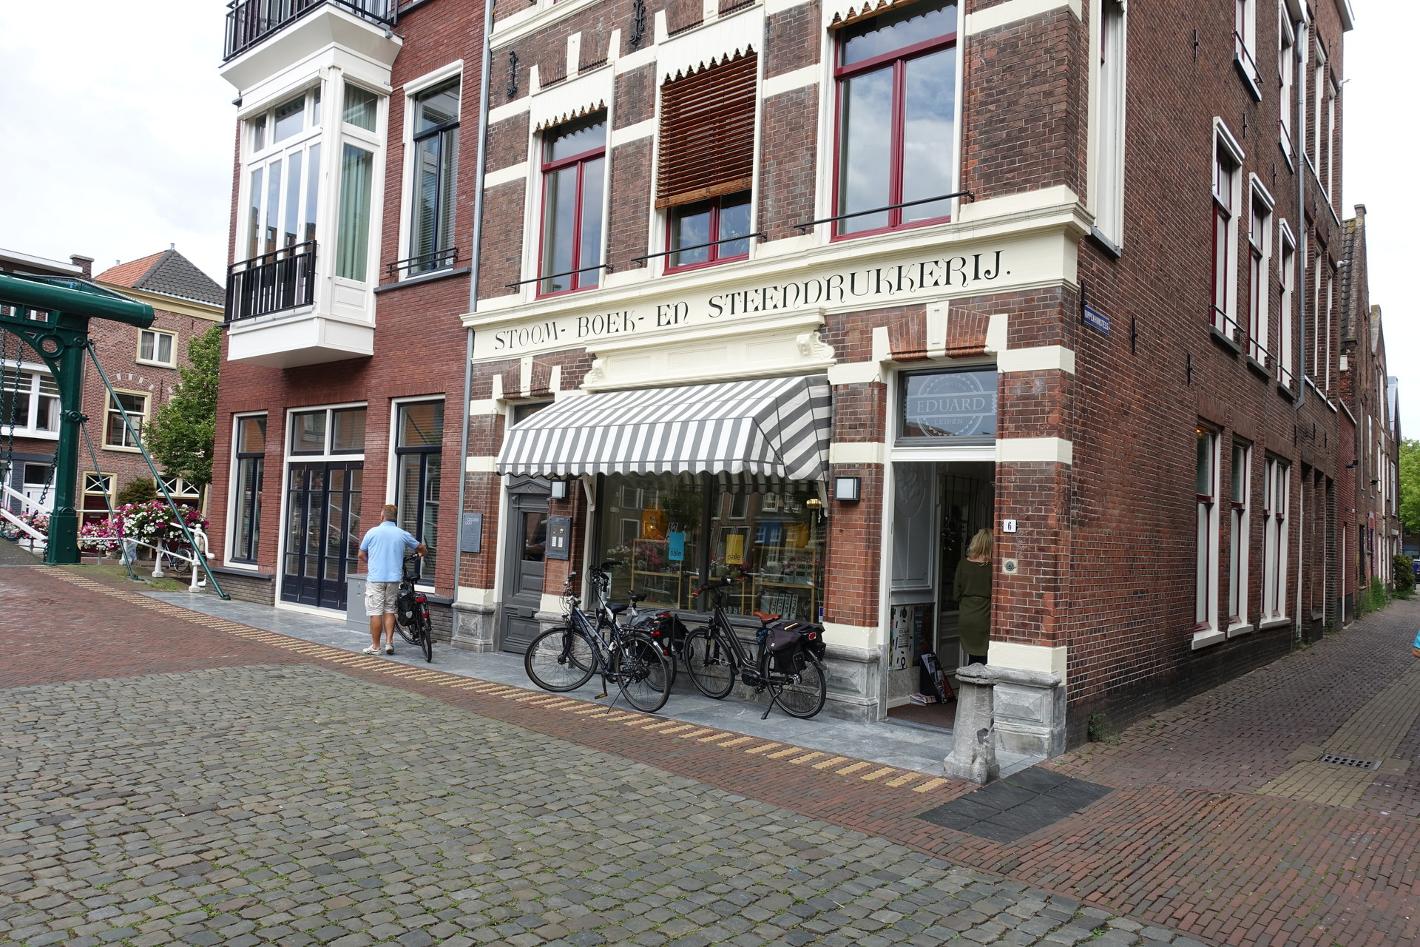 Foto EDUARD Leiden in Leiden, Winkelen, Mode & kleding, Wonen & koken - #1